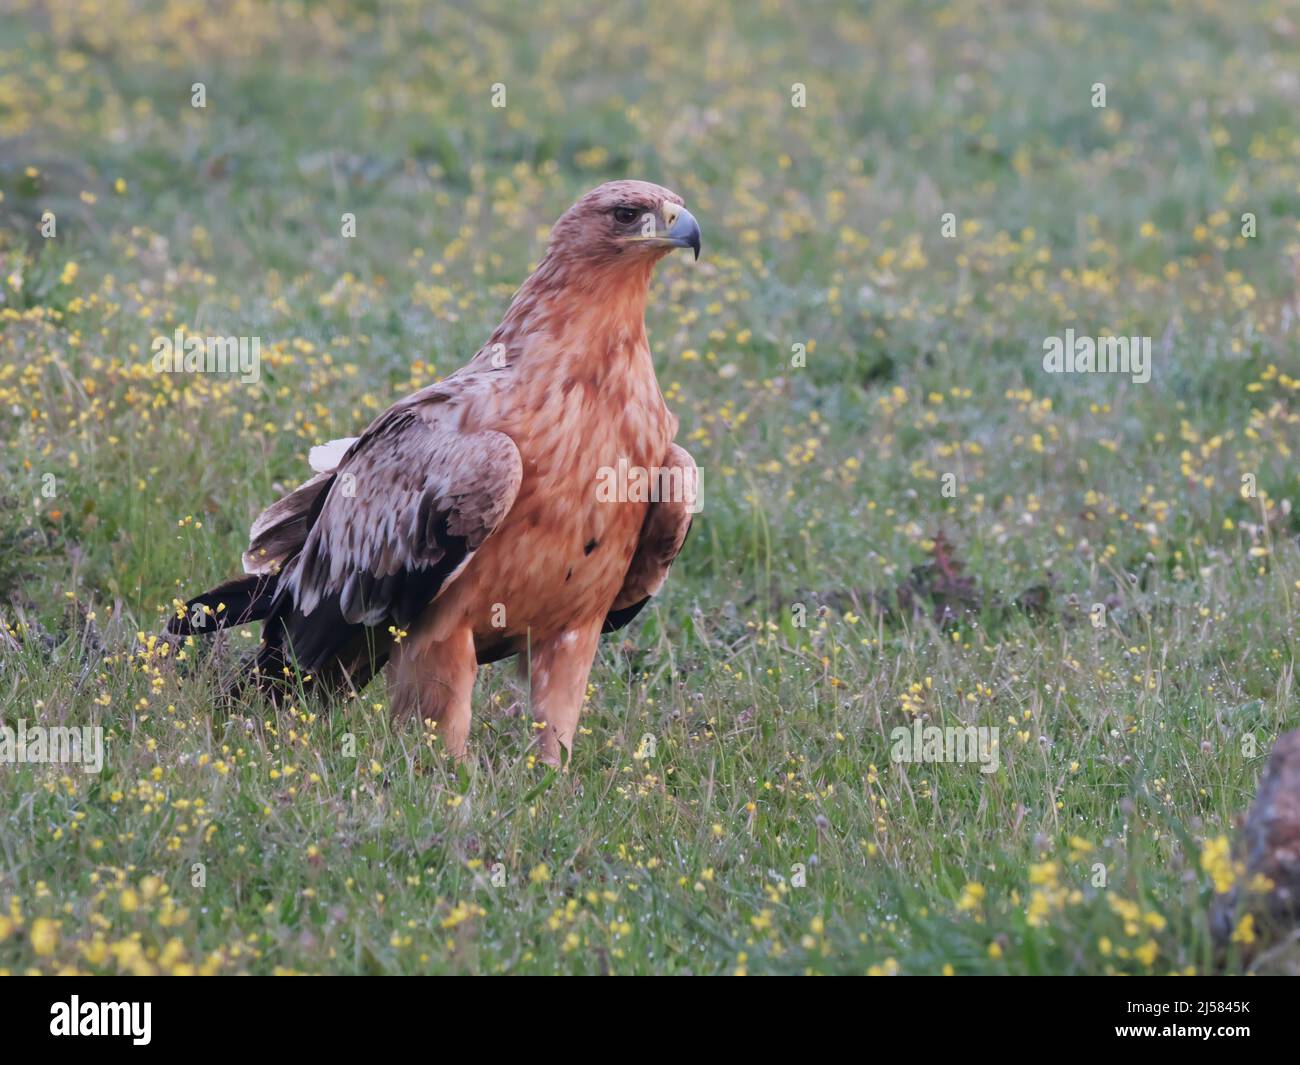 Kaiseradler (Aquila adalberti) Jungvogel sucht auf der bluehenden Wiese nach Fallwild, Extremadura, Spanien Foto Stock